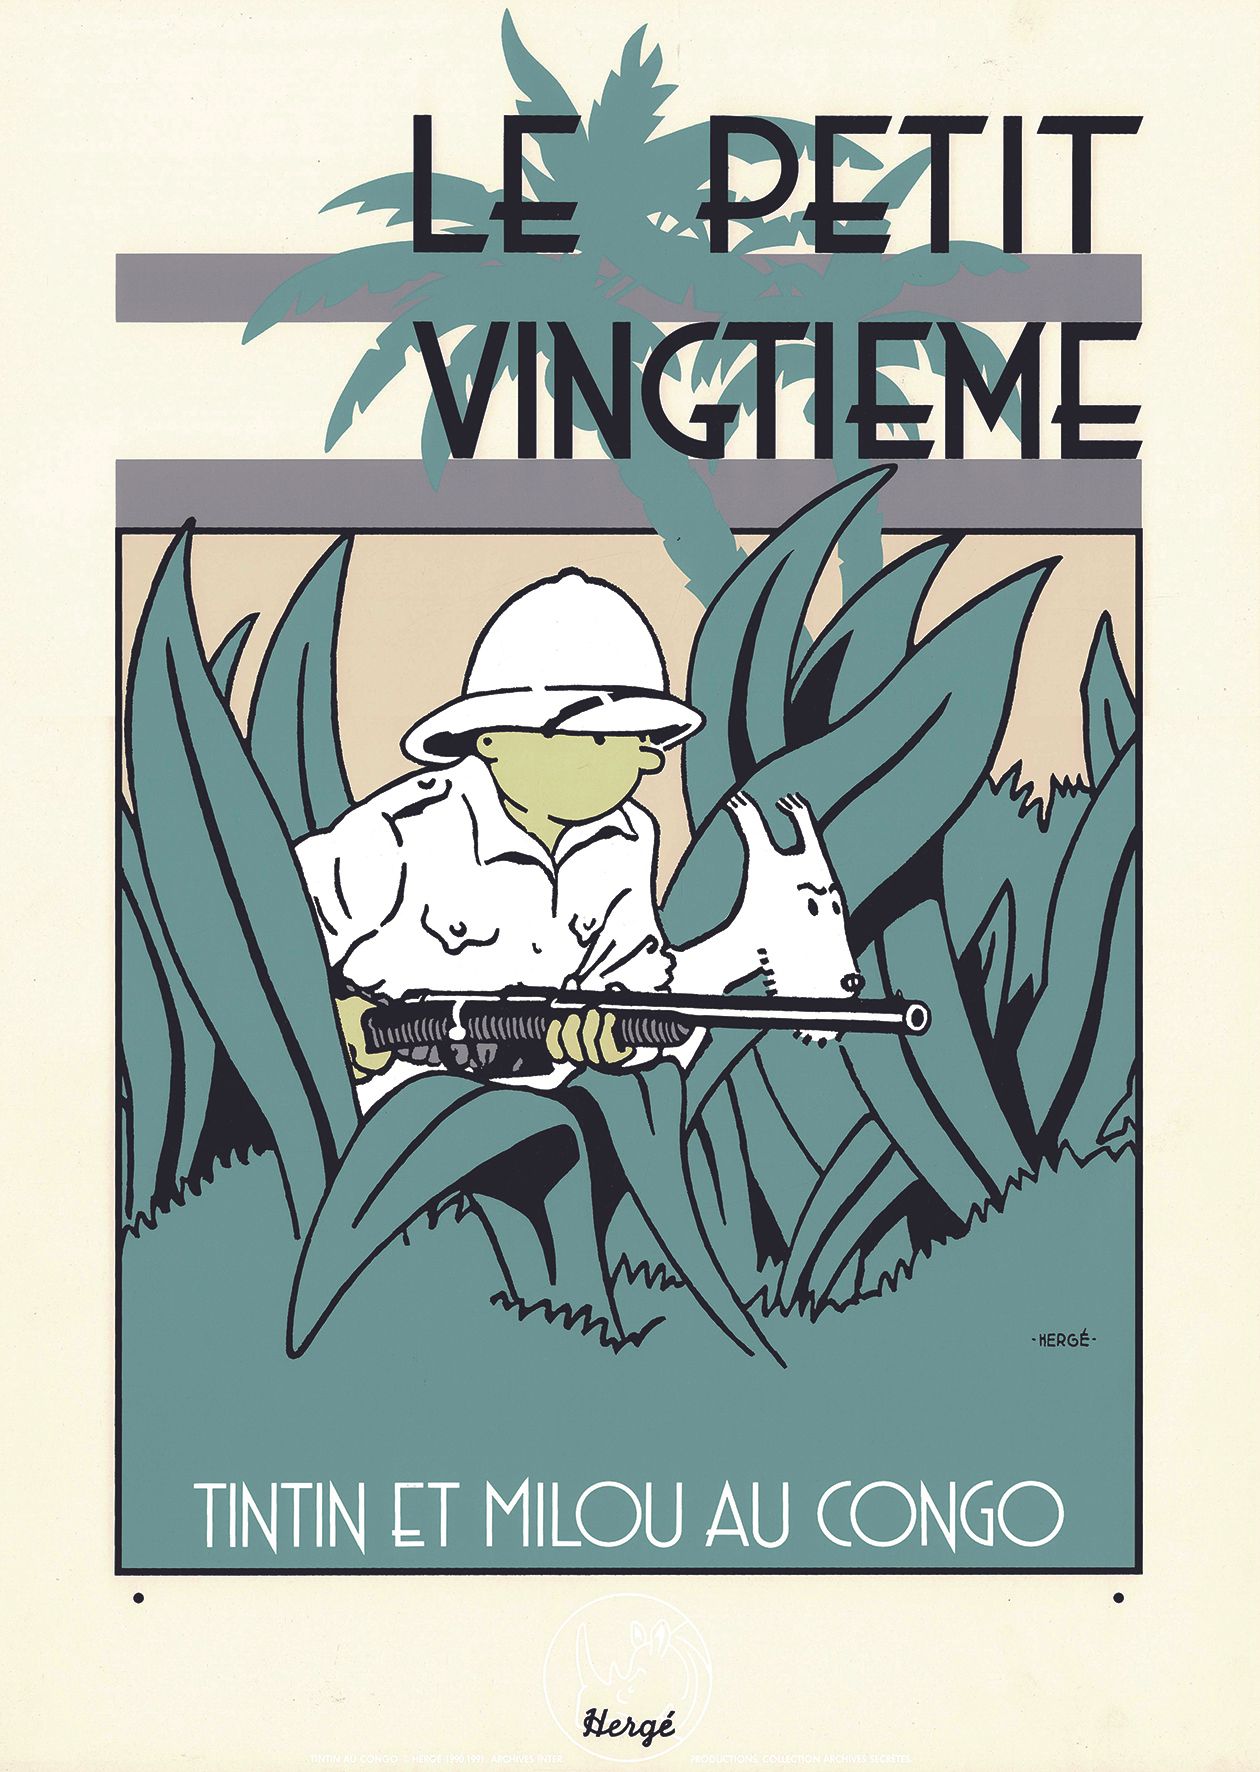 HERGÉ 
Tintín, "Le Petit Vingtième" serigrafía del episodio "Tintín en el Congo"&hellip;